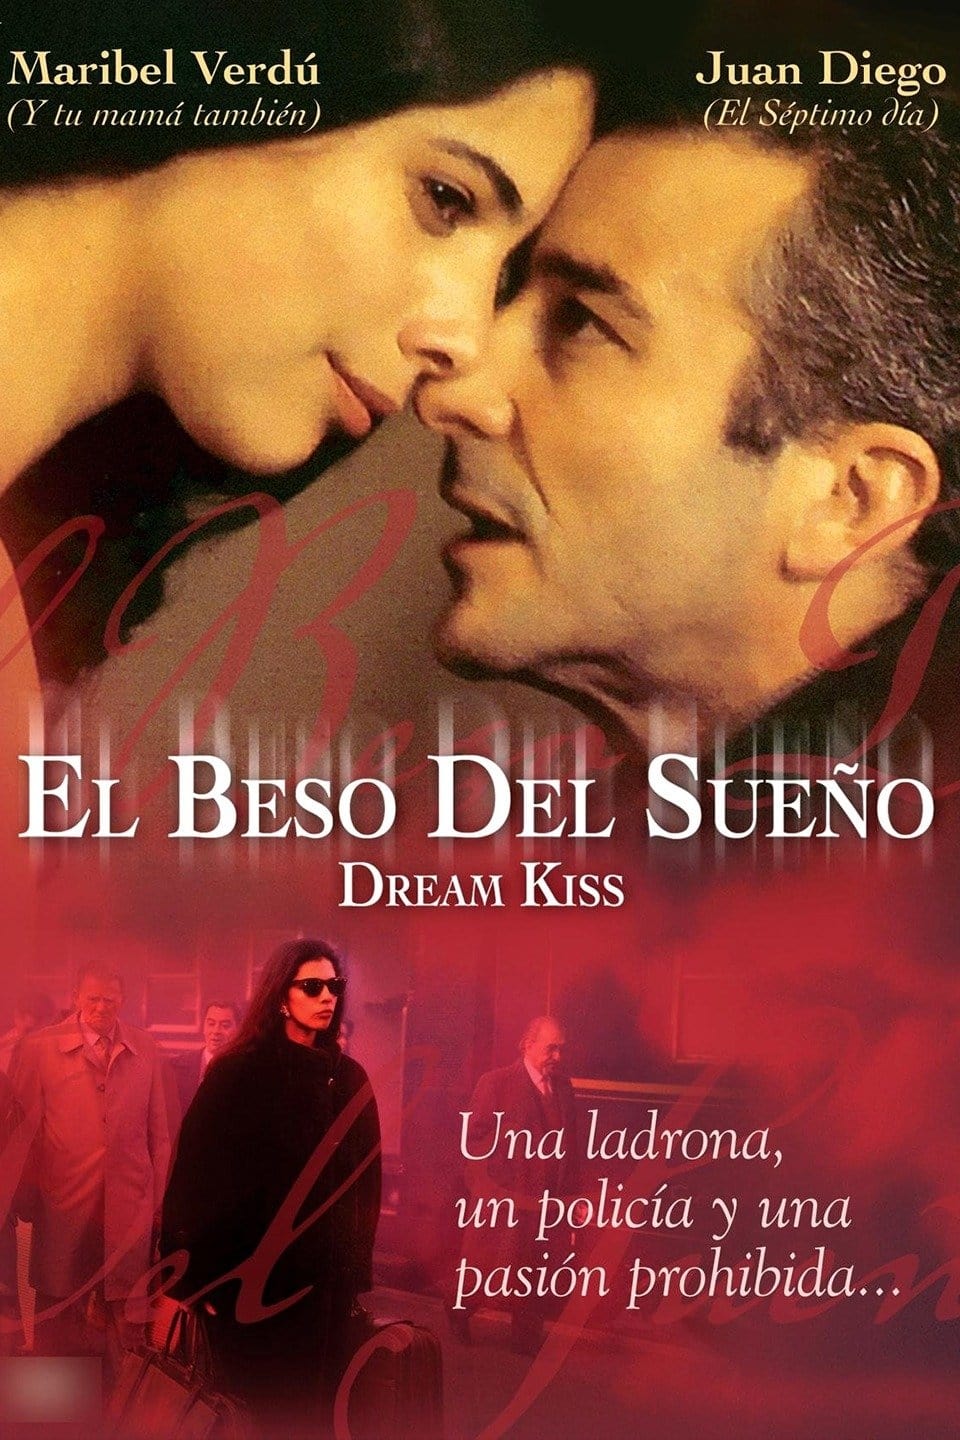 Dream Kiss (1992)